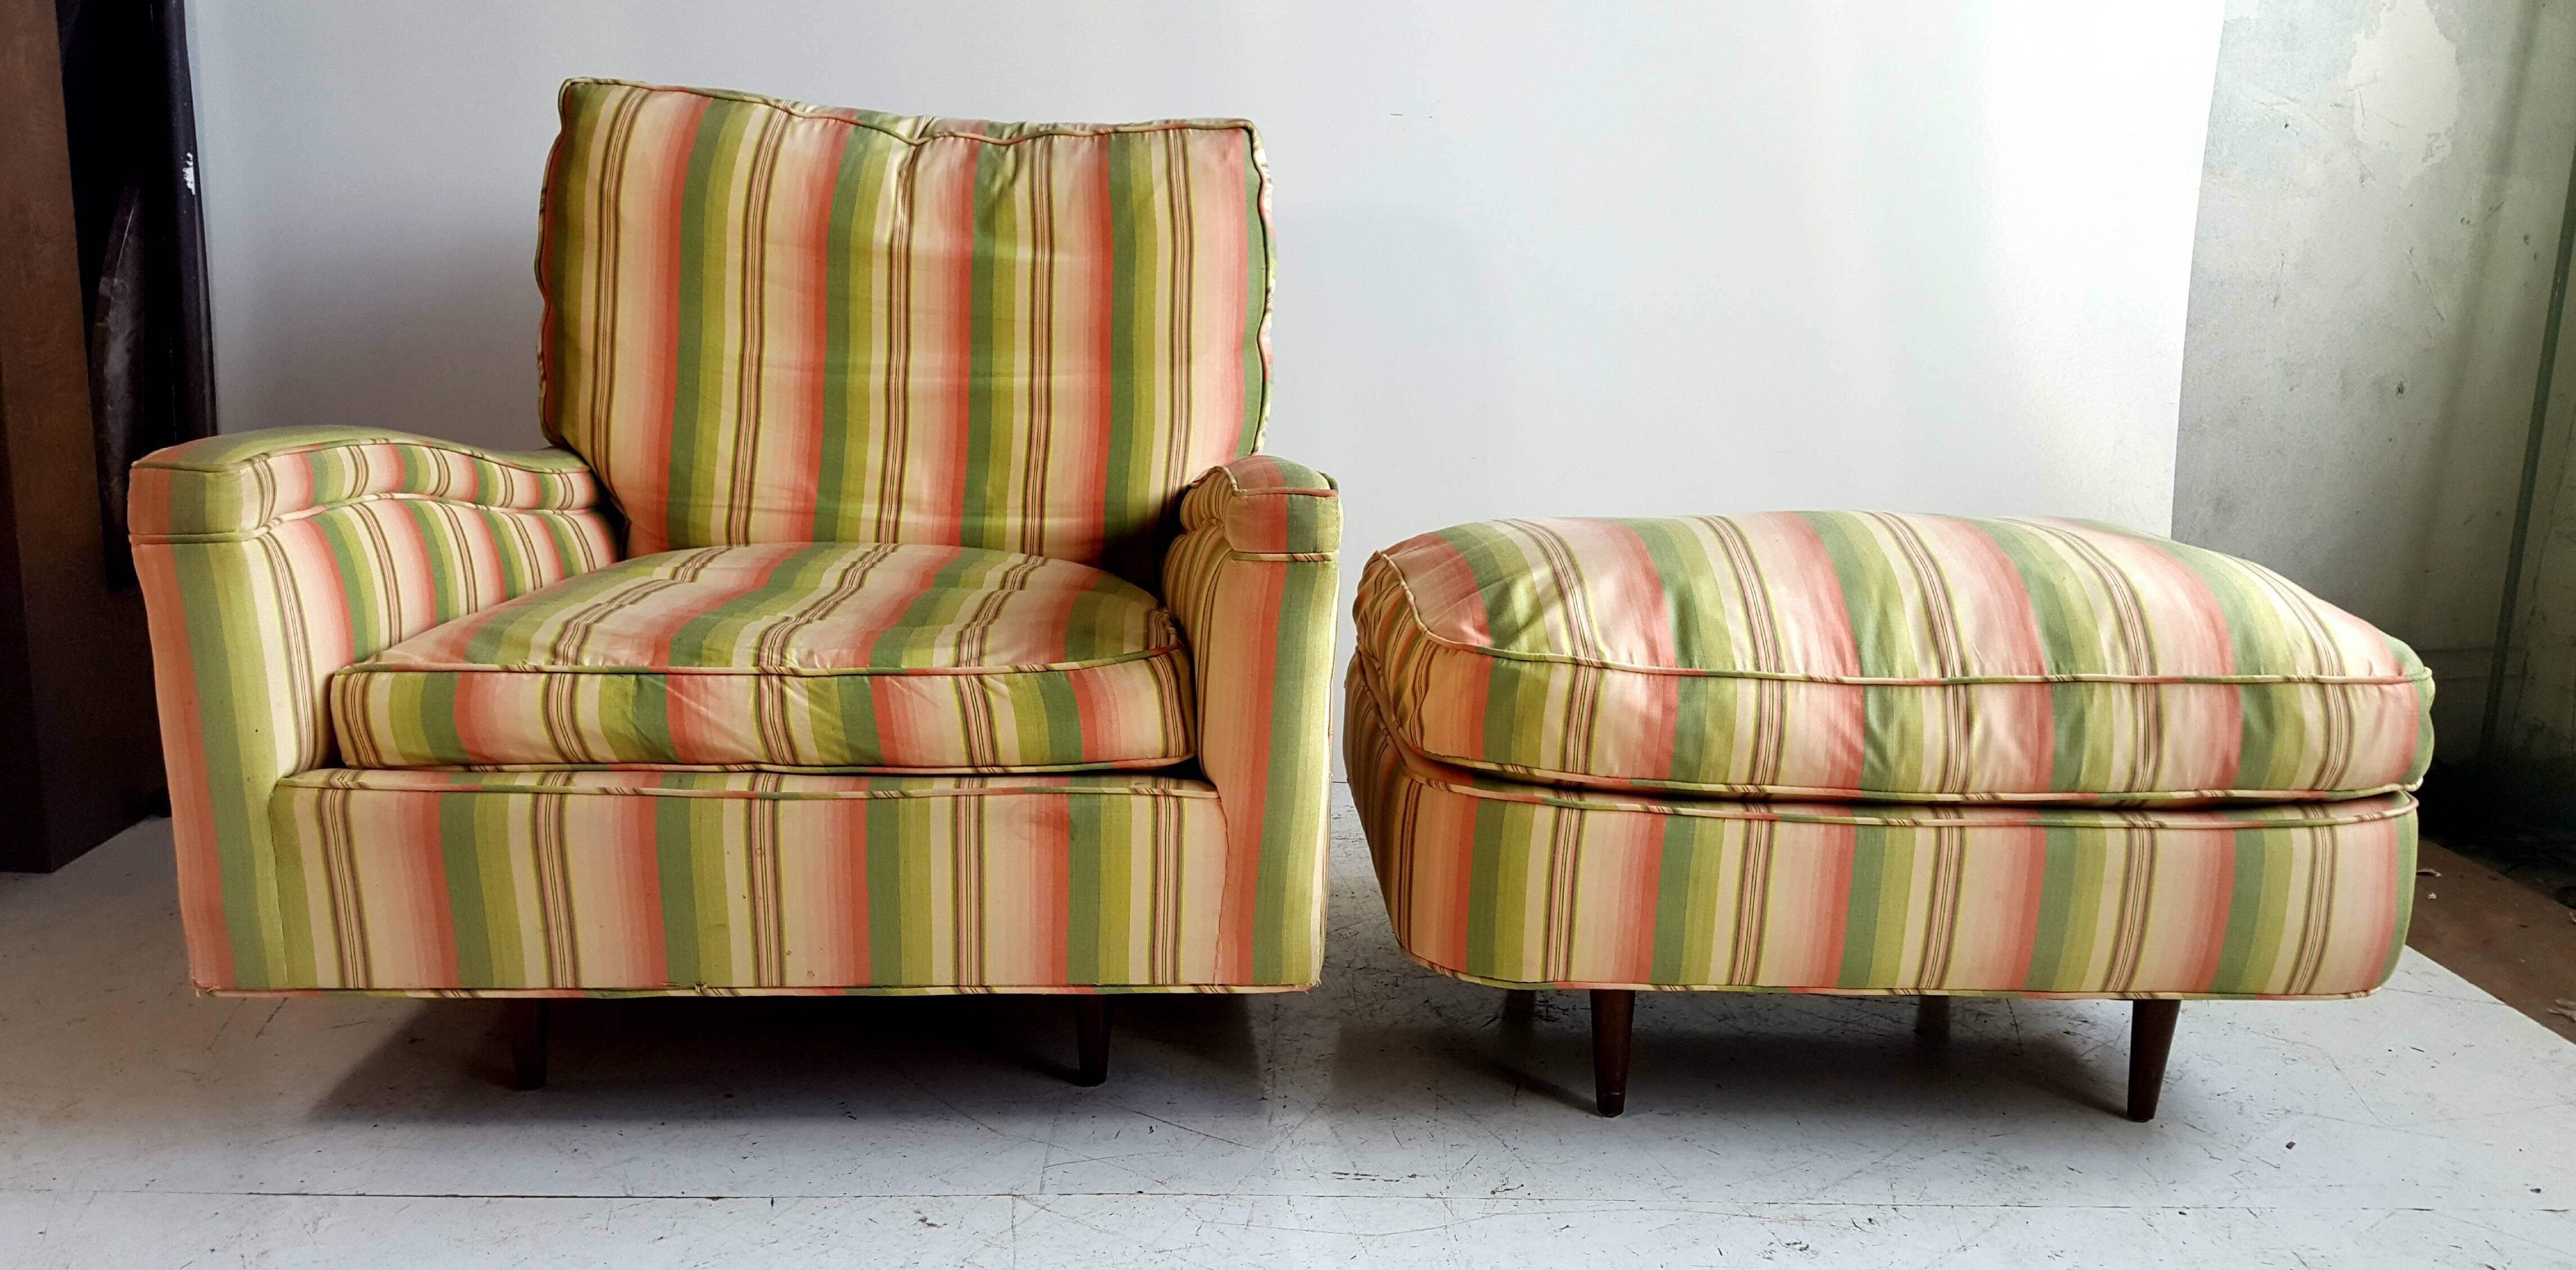 Fauteuil et ottoman Art déco allongé et surdimensionné. Extrêmement confortable, rempli de duvet, belle qualité et construction. La chaise et l'ottoman semblent flotter grâce à la conception de leurs pieds encastrés, ce qui est étonnant. Le pouf